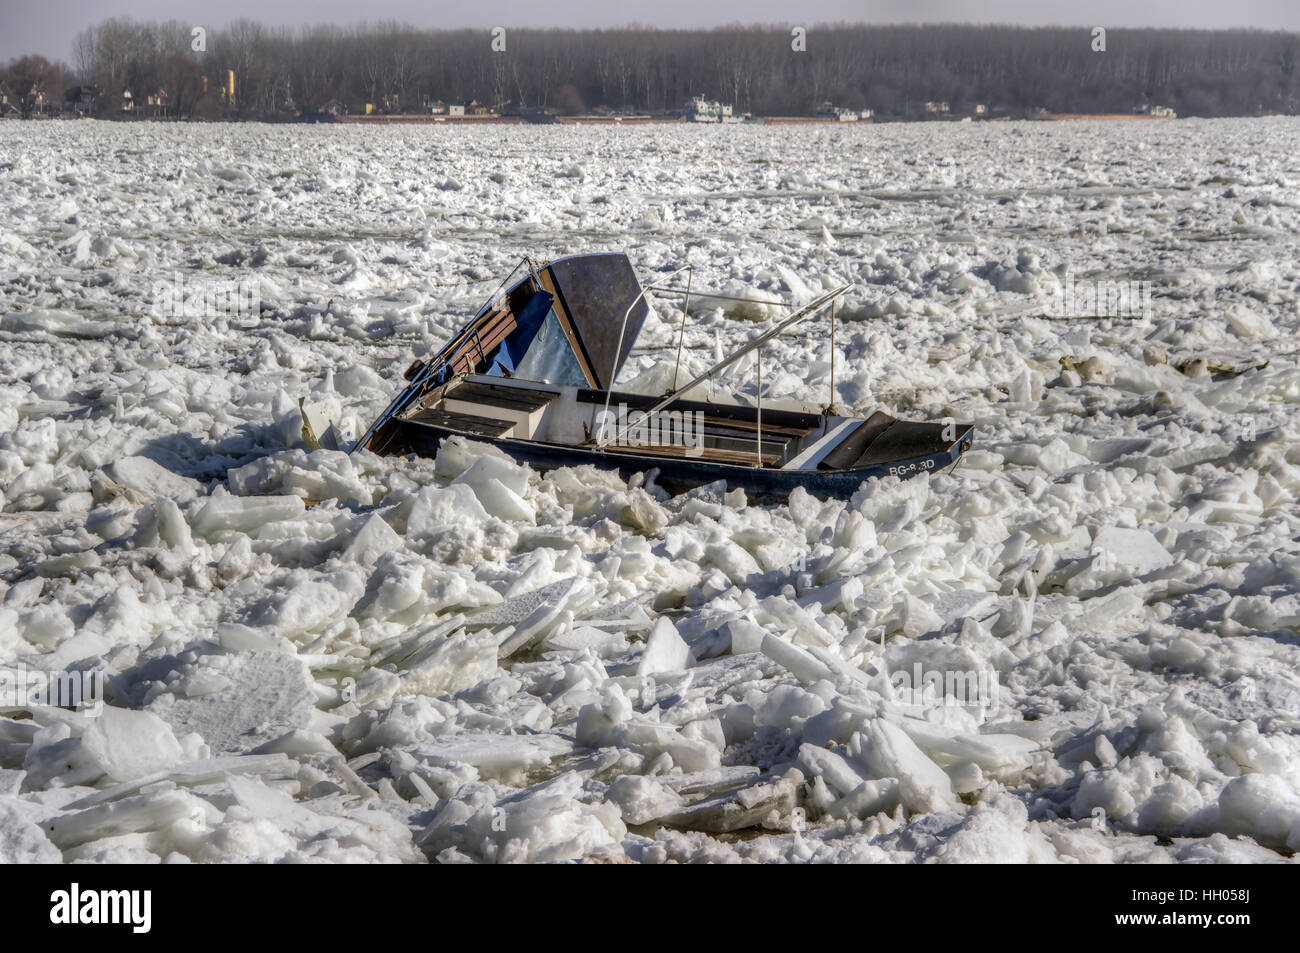 Eis Brocken Schwimmer an der Donau, die alles in ihrem Weg zerstören. Eisblöcke zerkleinert Dutzende Floß Häuser und Boote. Stockfoto